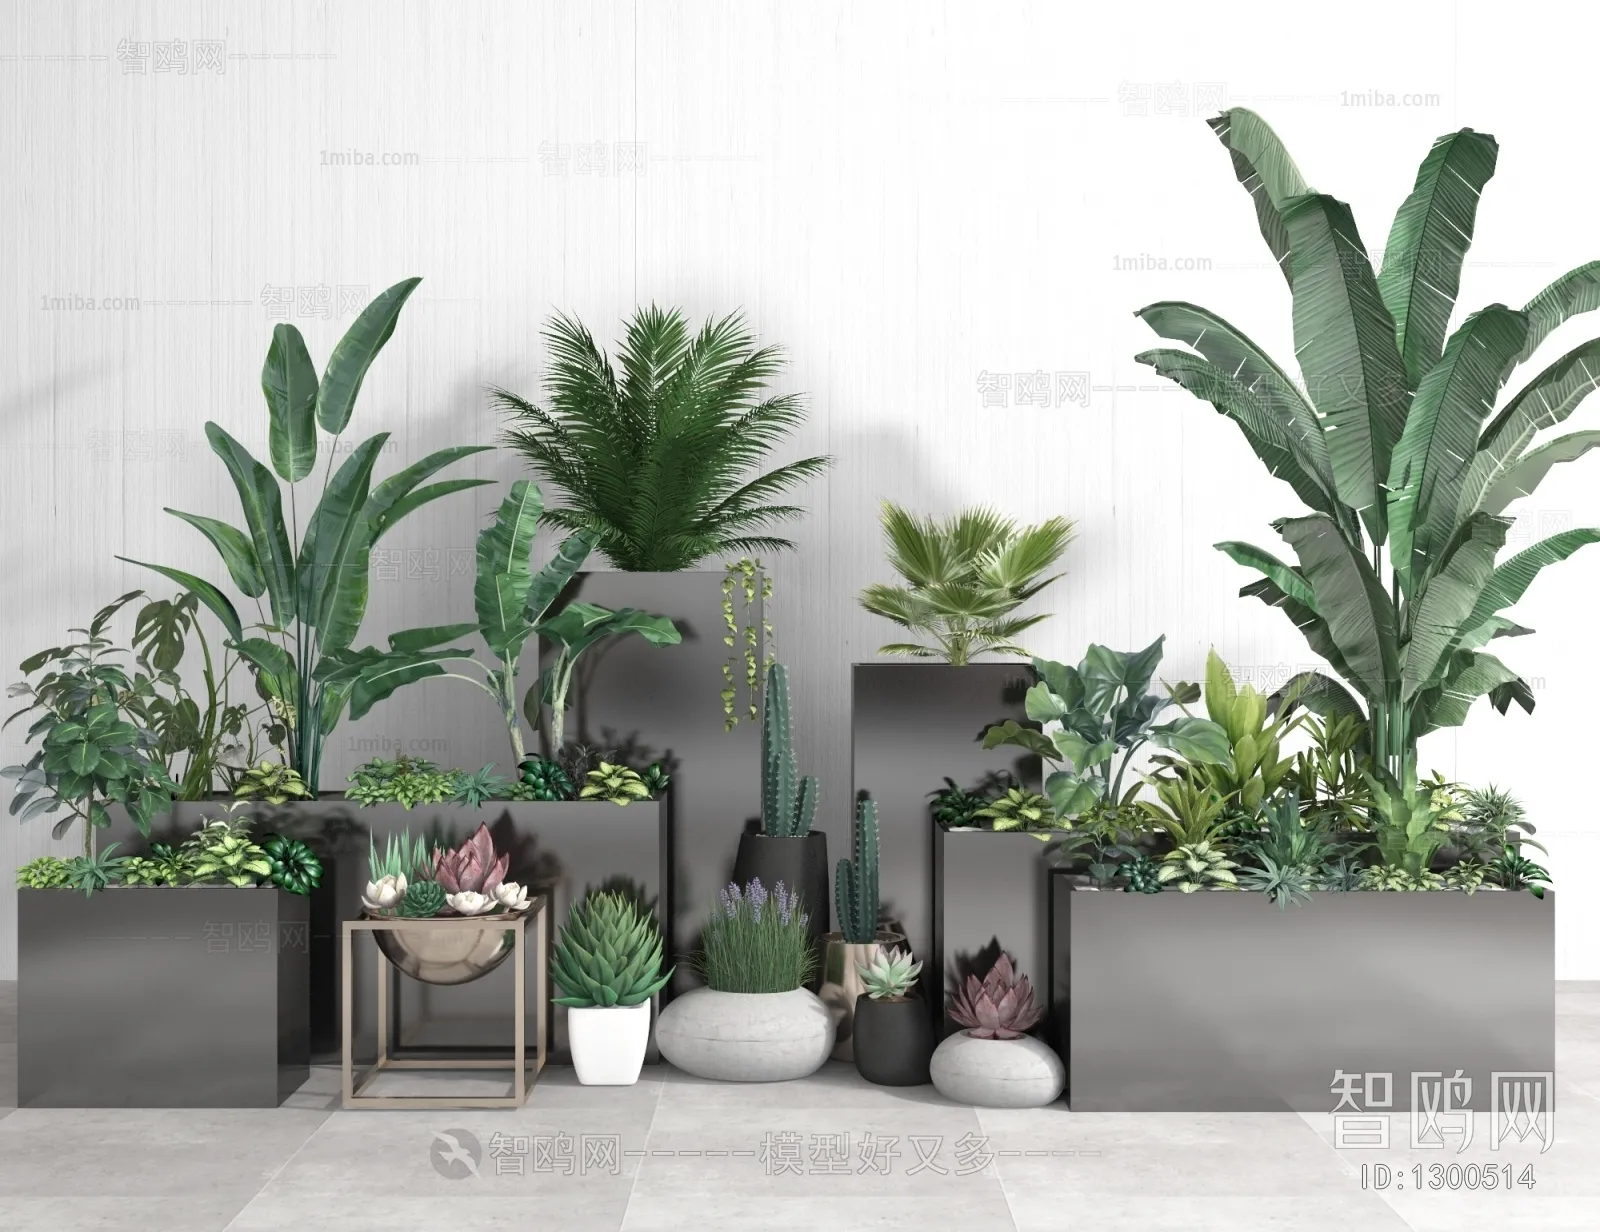 PLANT 3D MODELS – 039